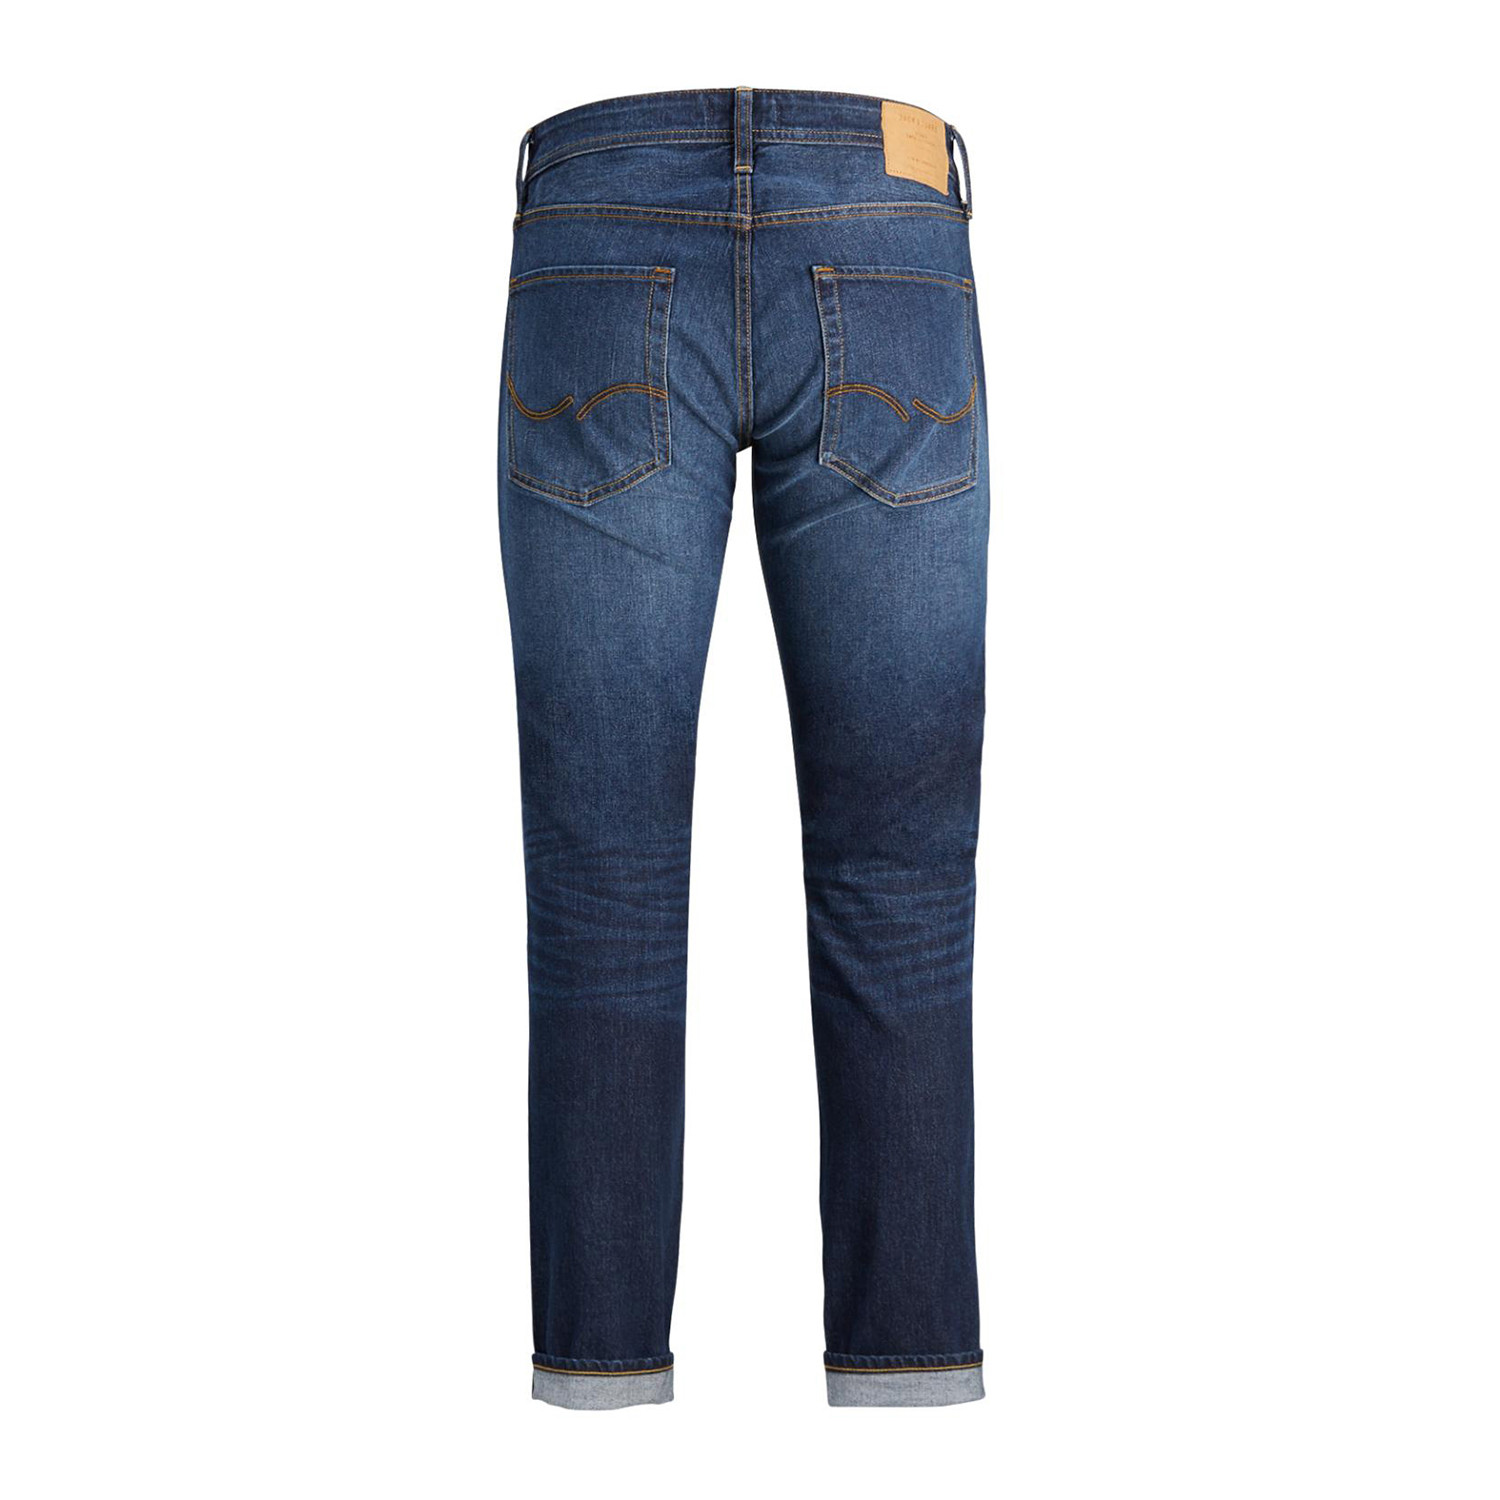 Original CR 006 Jeans // Blue Denim (30WX32L) - Jack & Jones - Touch of ...